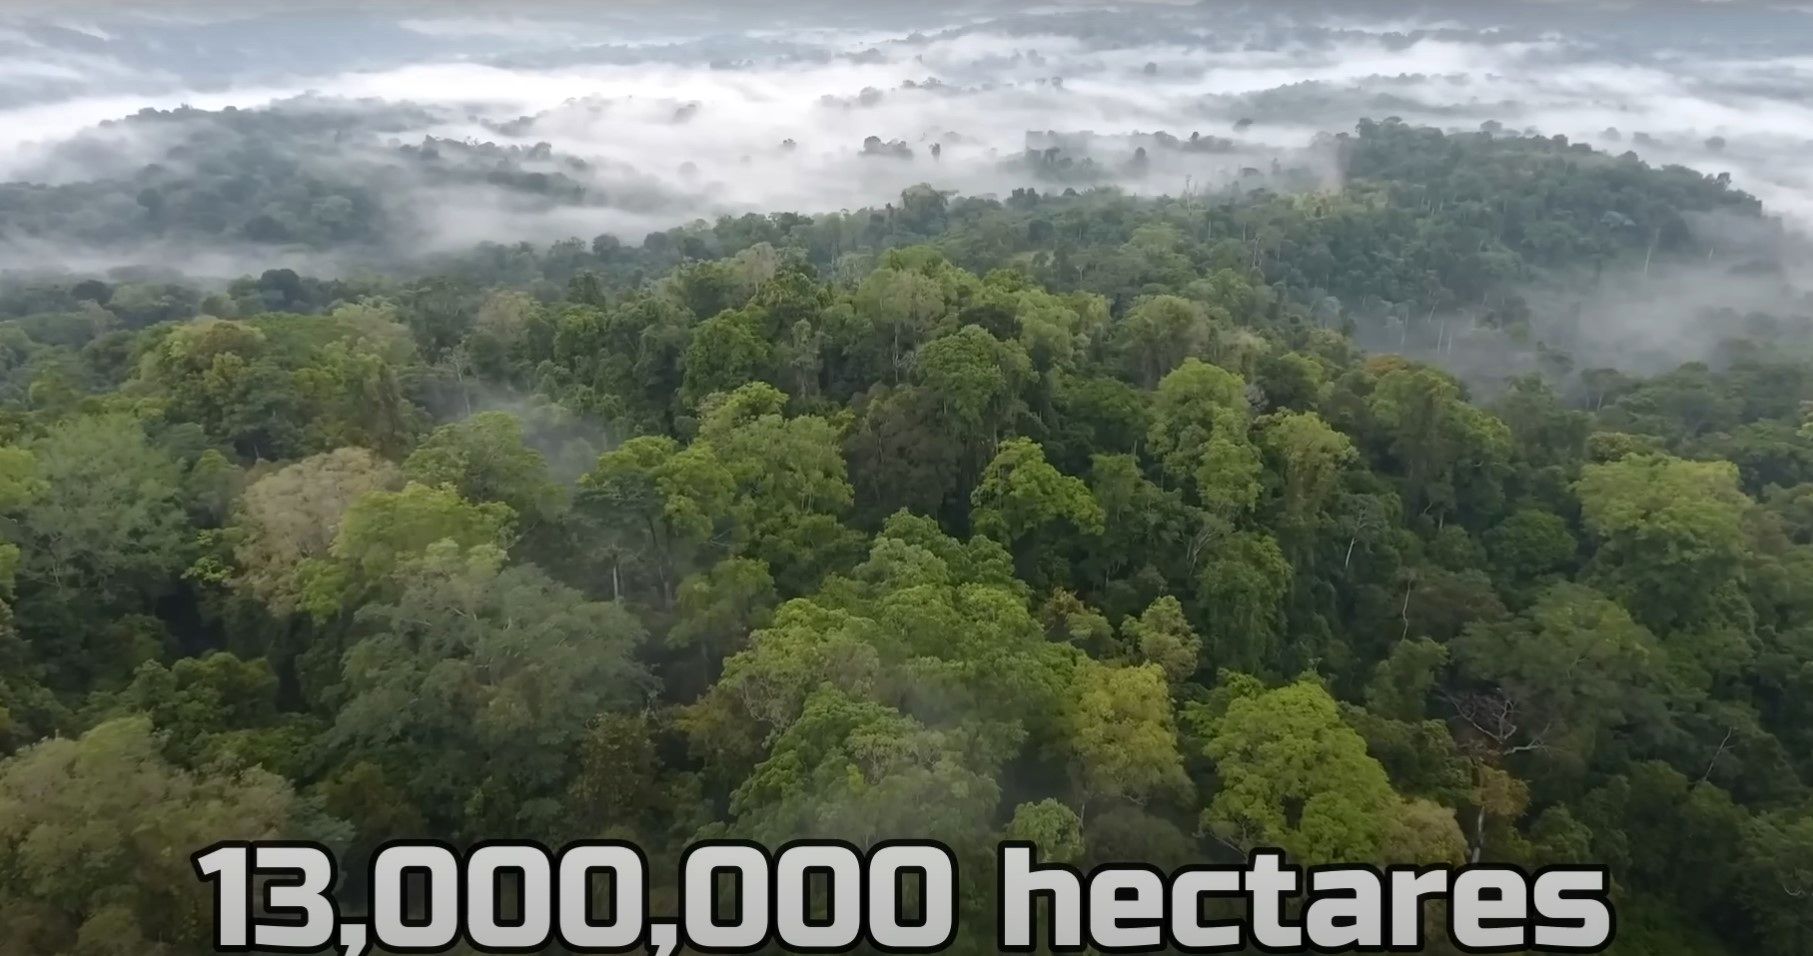 (ویدئو) چین چگونه بیابان هایش را به جنگل تبدیل کرد؟